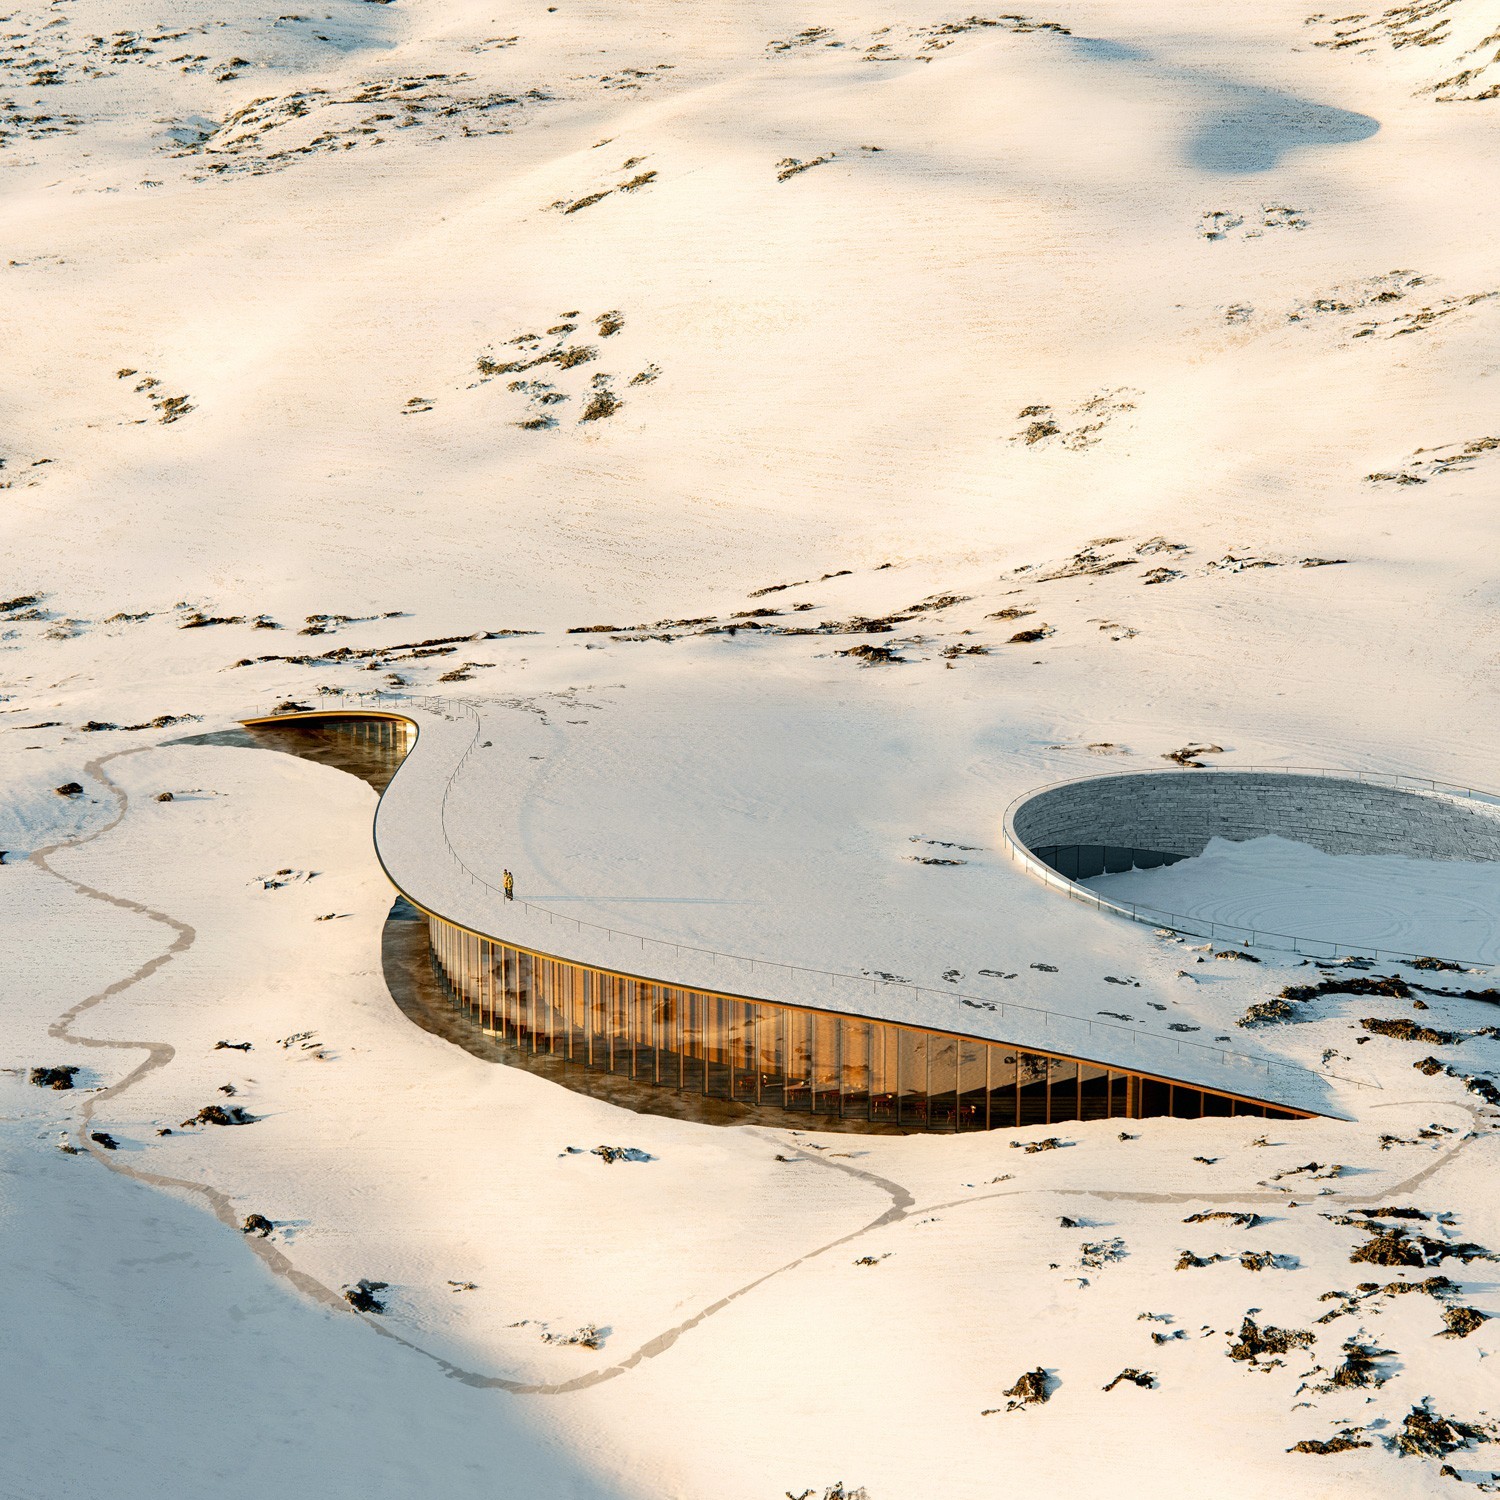 Voici à quoi ressemblera un jour le Centre du patrimoine inuit du Nunavut (NIHC) à Iqaluit au Canada.